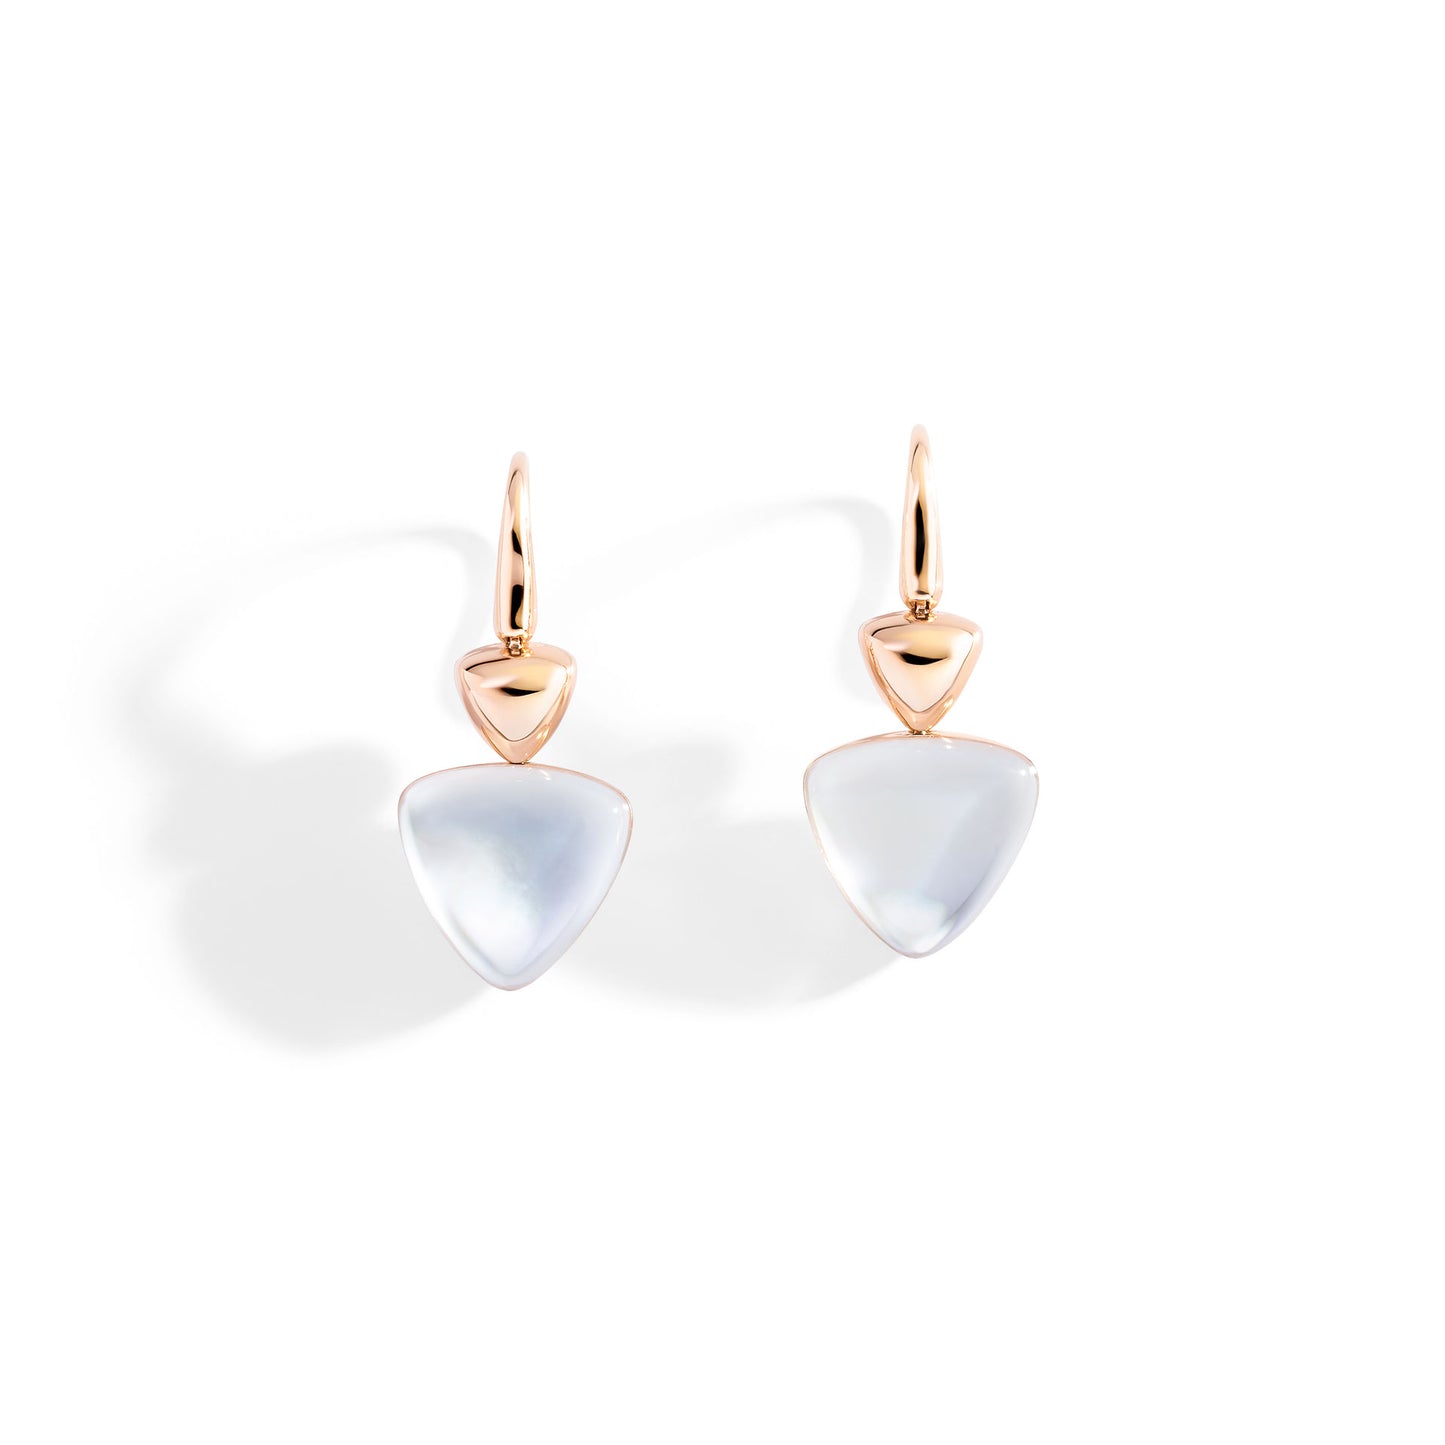 Freccia earrings